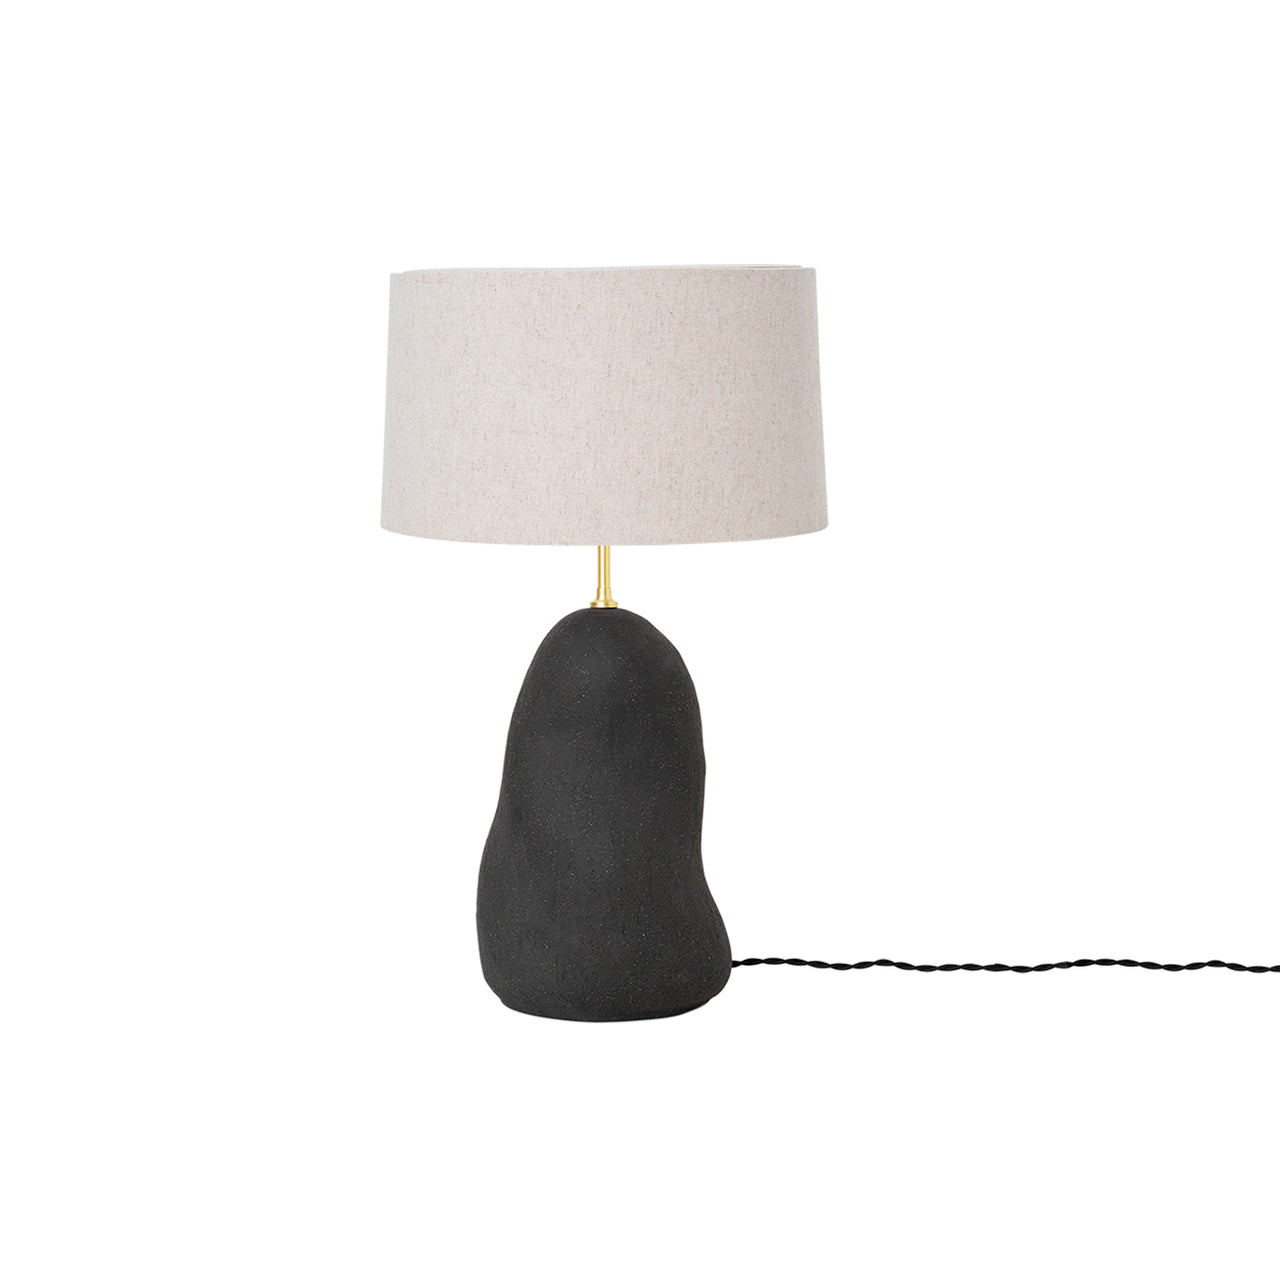 Hebe Lamp: Small + Natural + Dark Grey